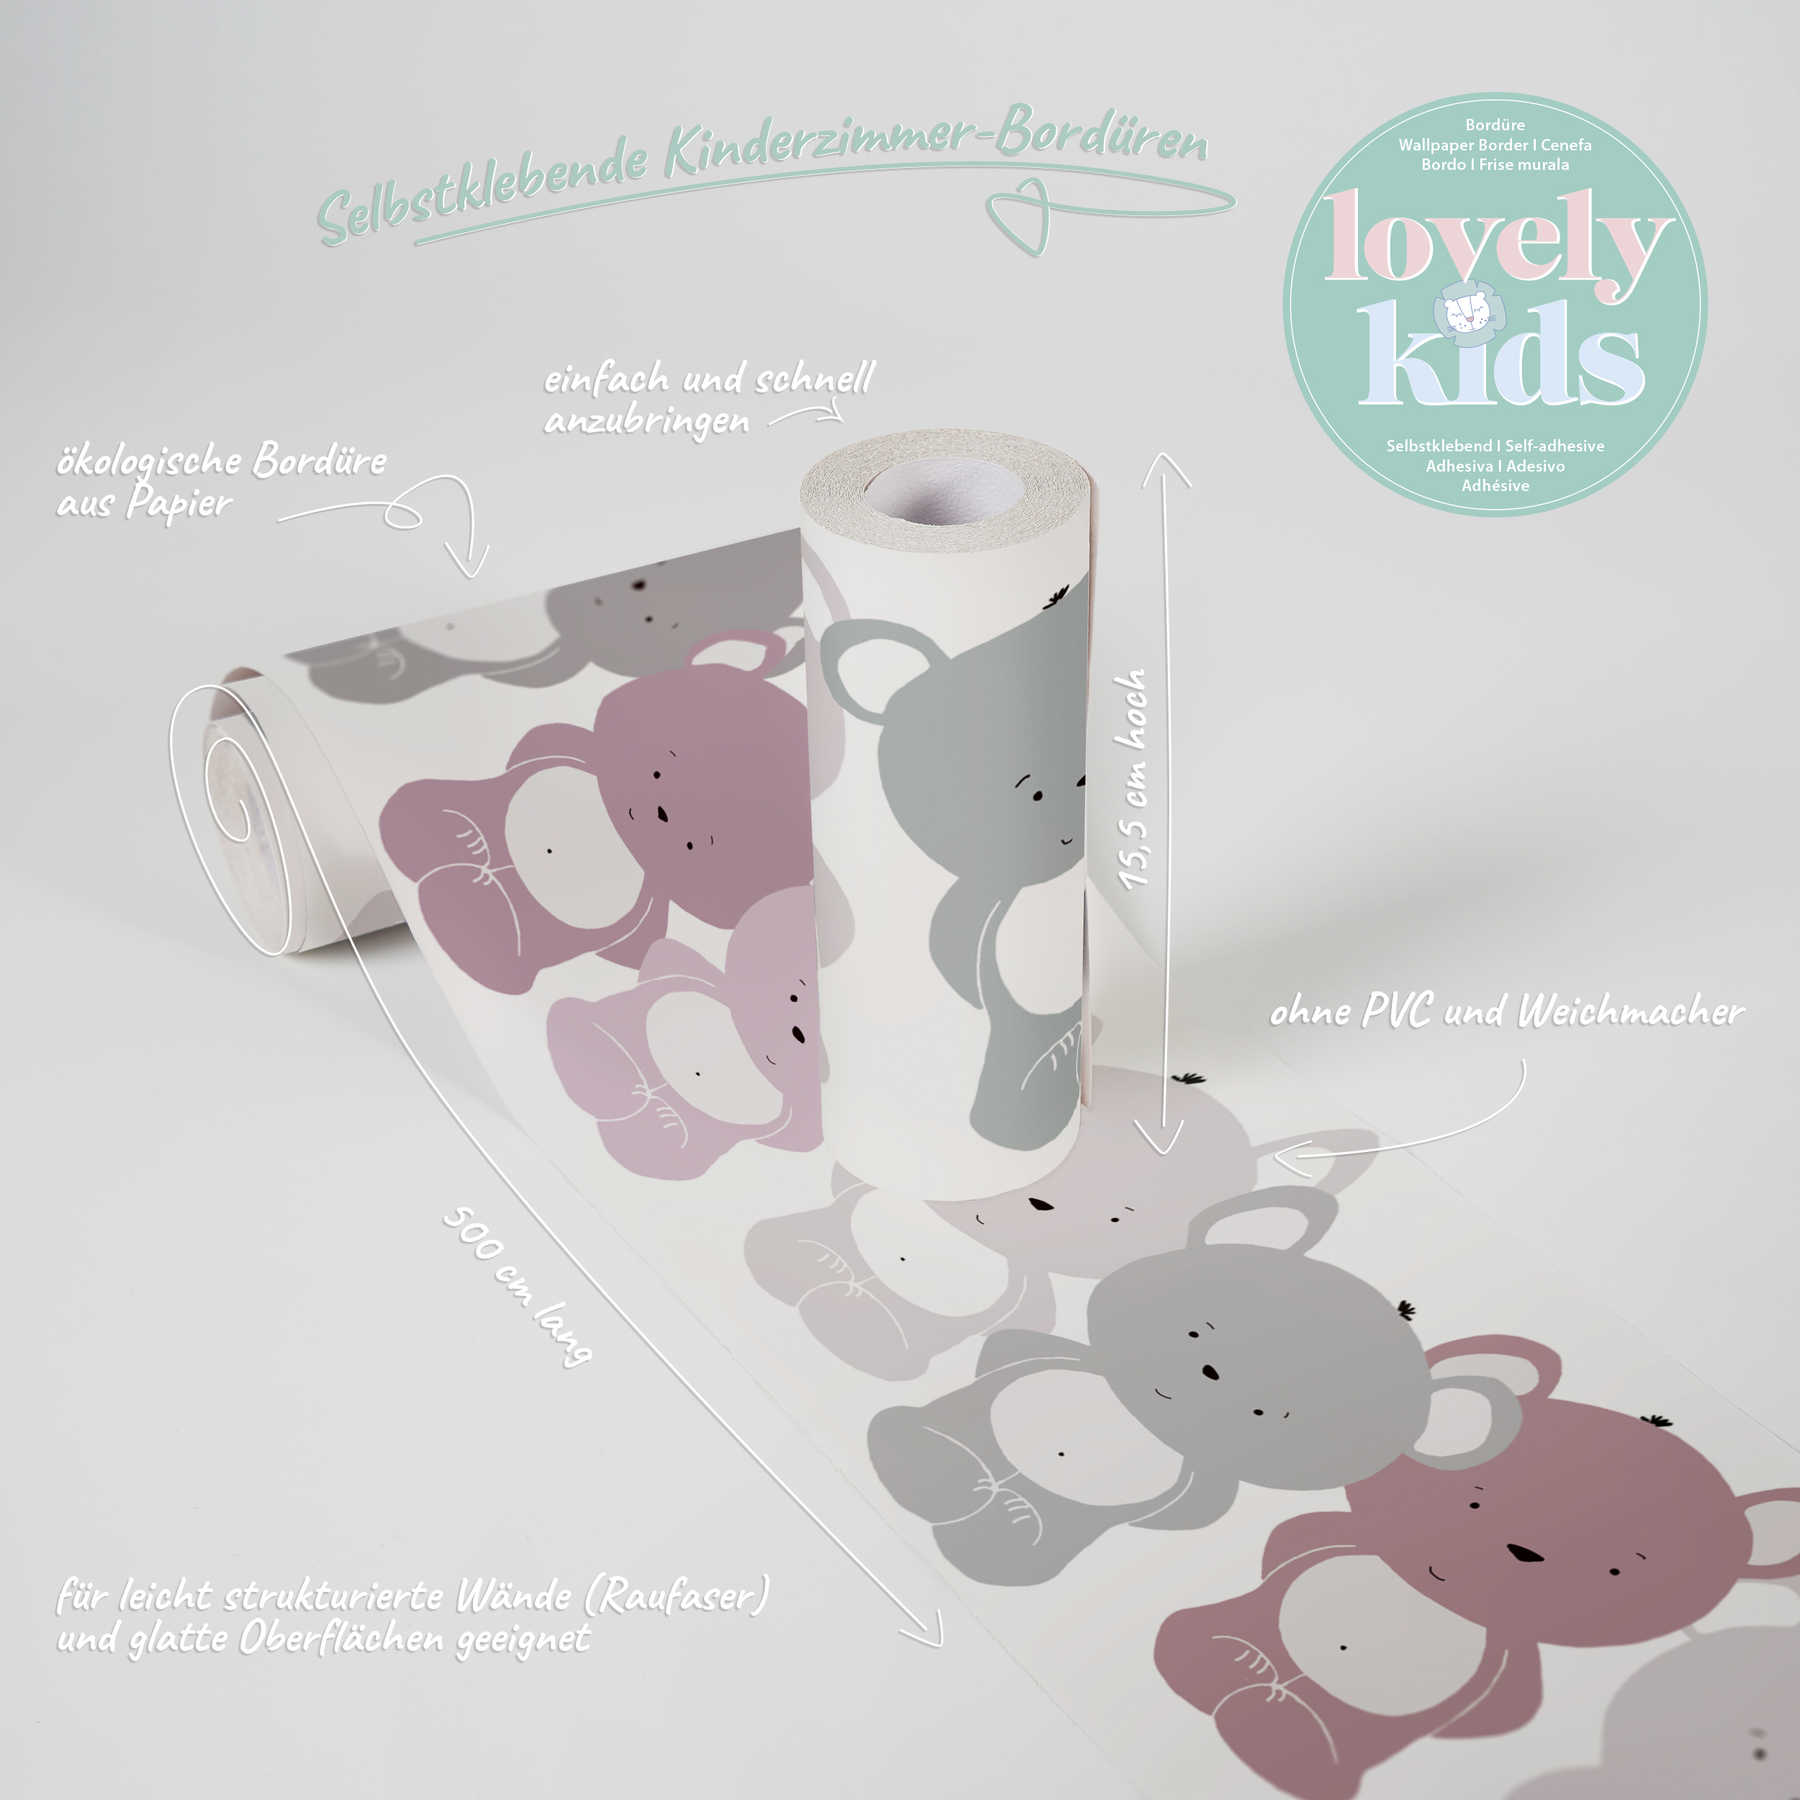             Incantevole bordura per cameretta per bambini "Lucky Bears" per ragazze - Rosa, viola, grigio
        